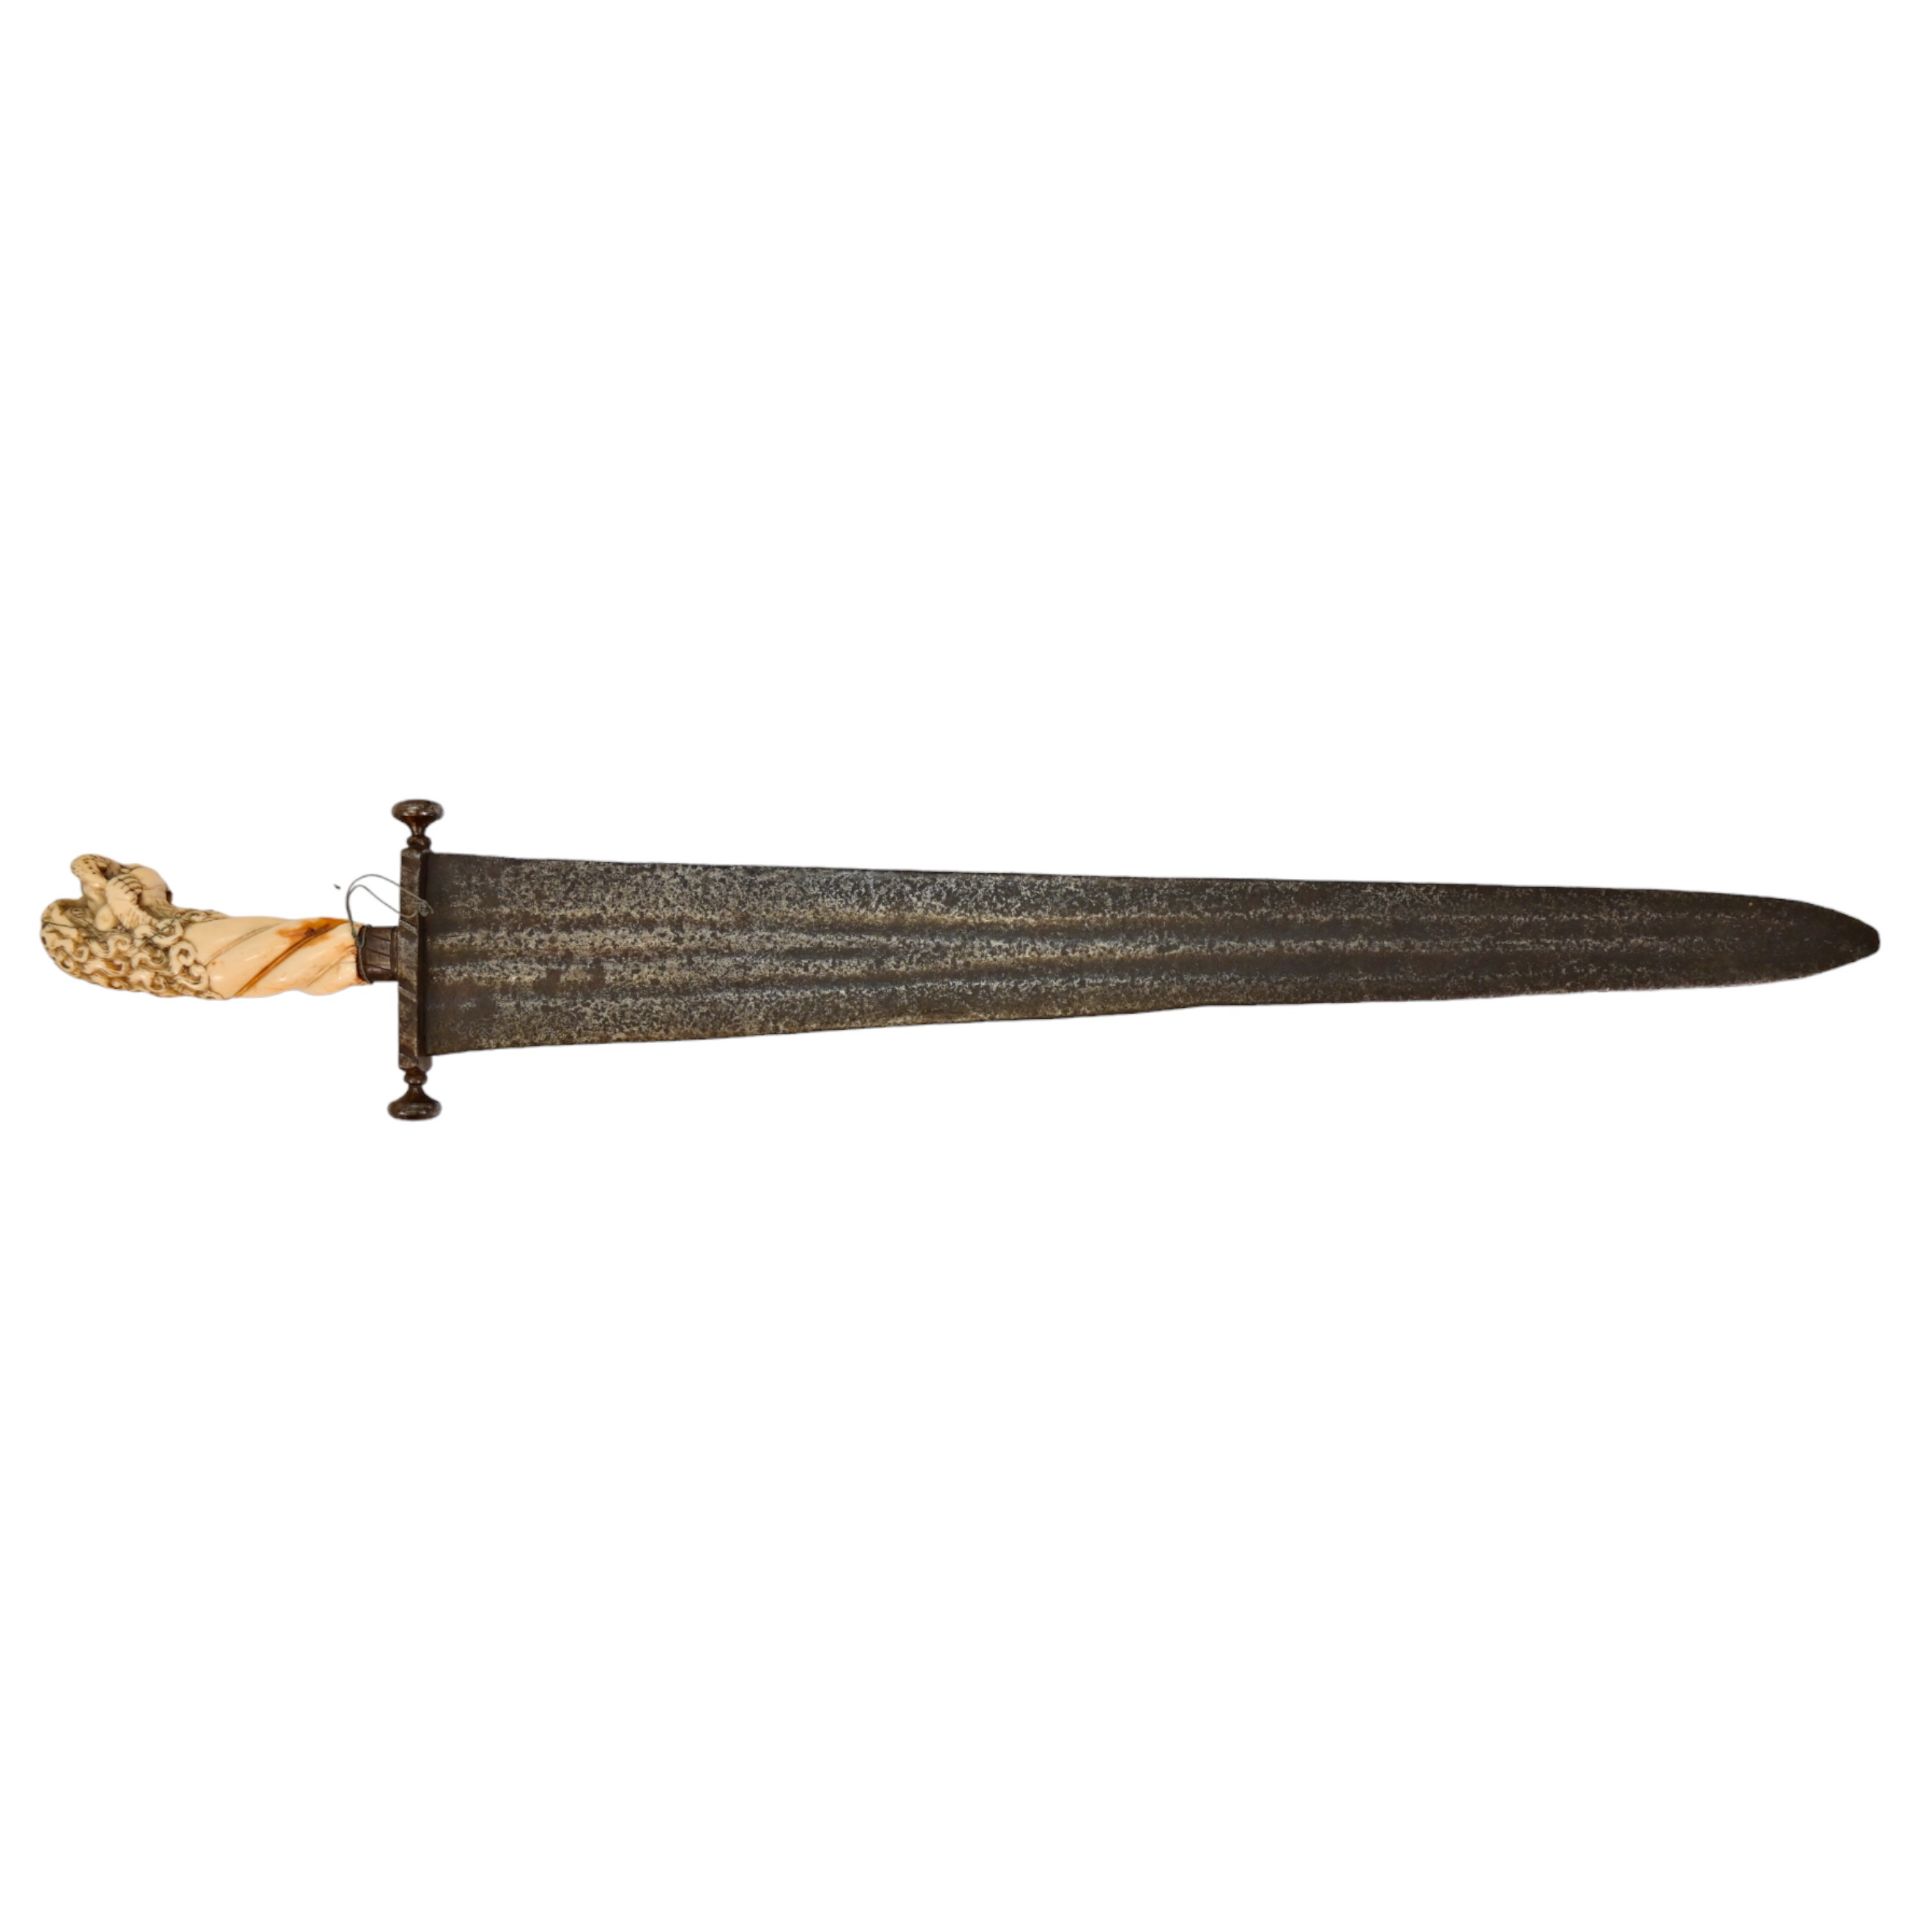 Rare Cinquedea type Sword, 16-17th Century, Italy. - Bild 2 aus 14